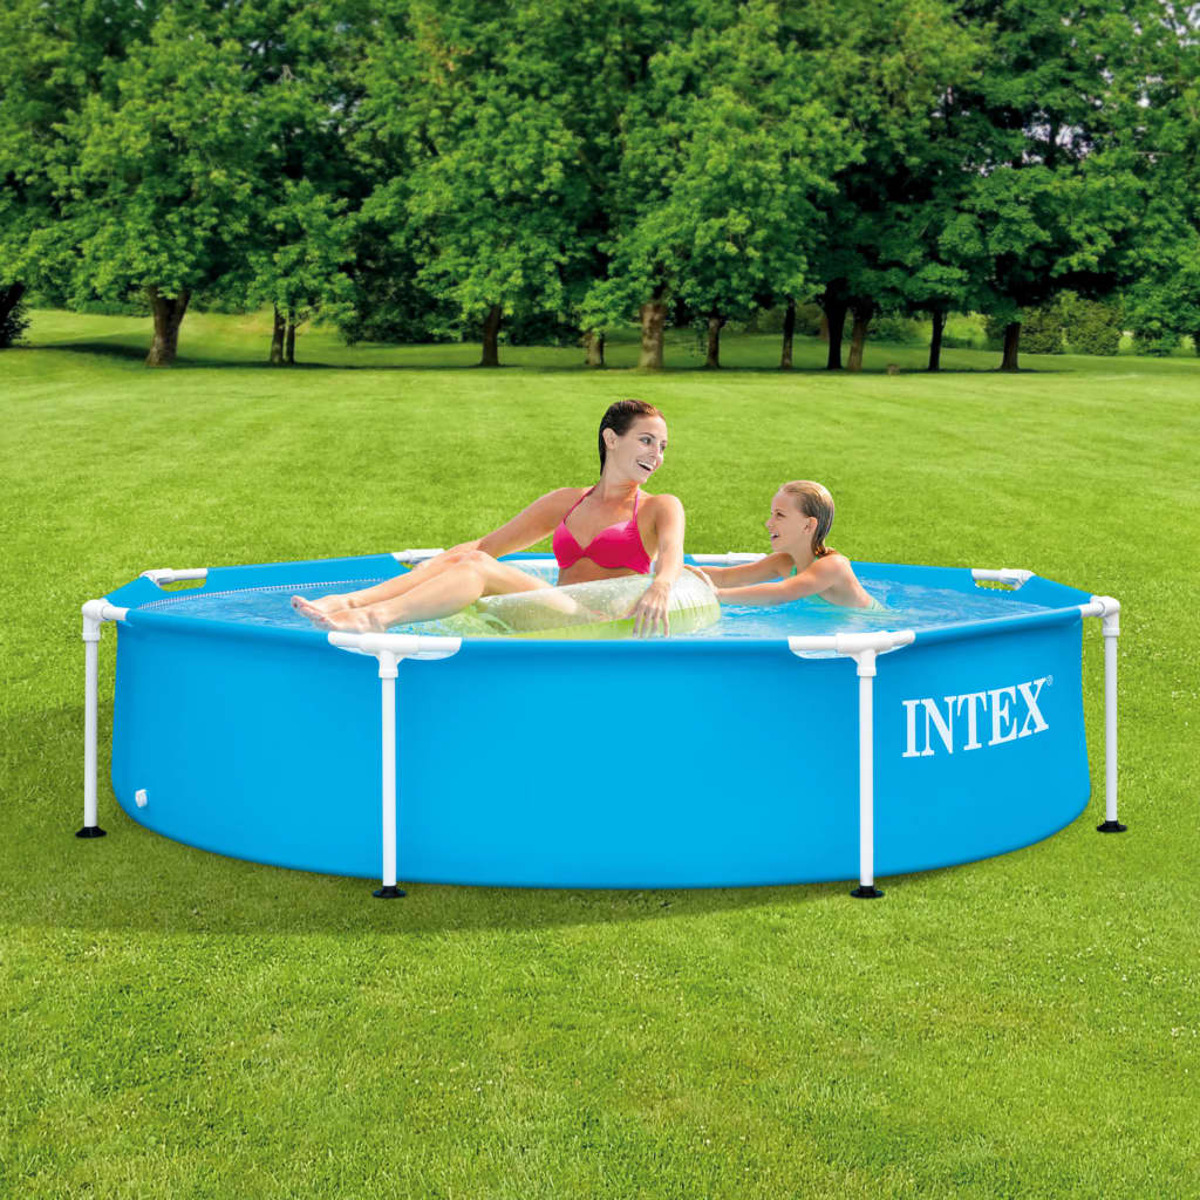 INTEX Blau Pool, 3202884